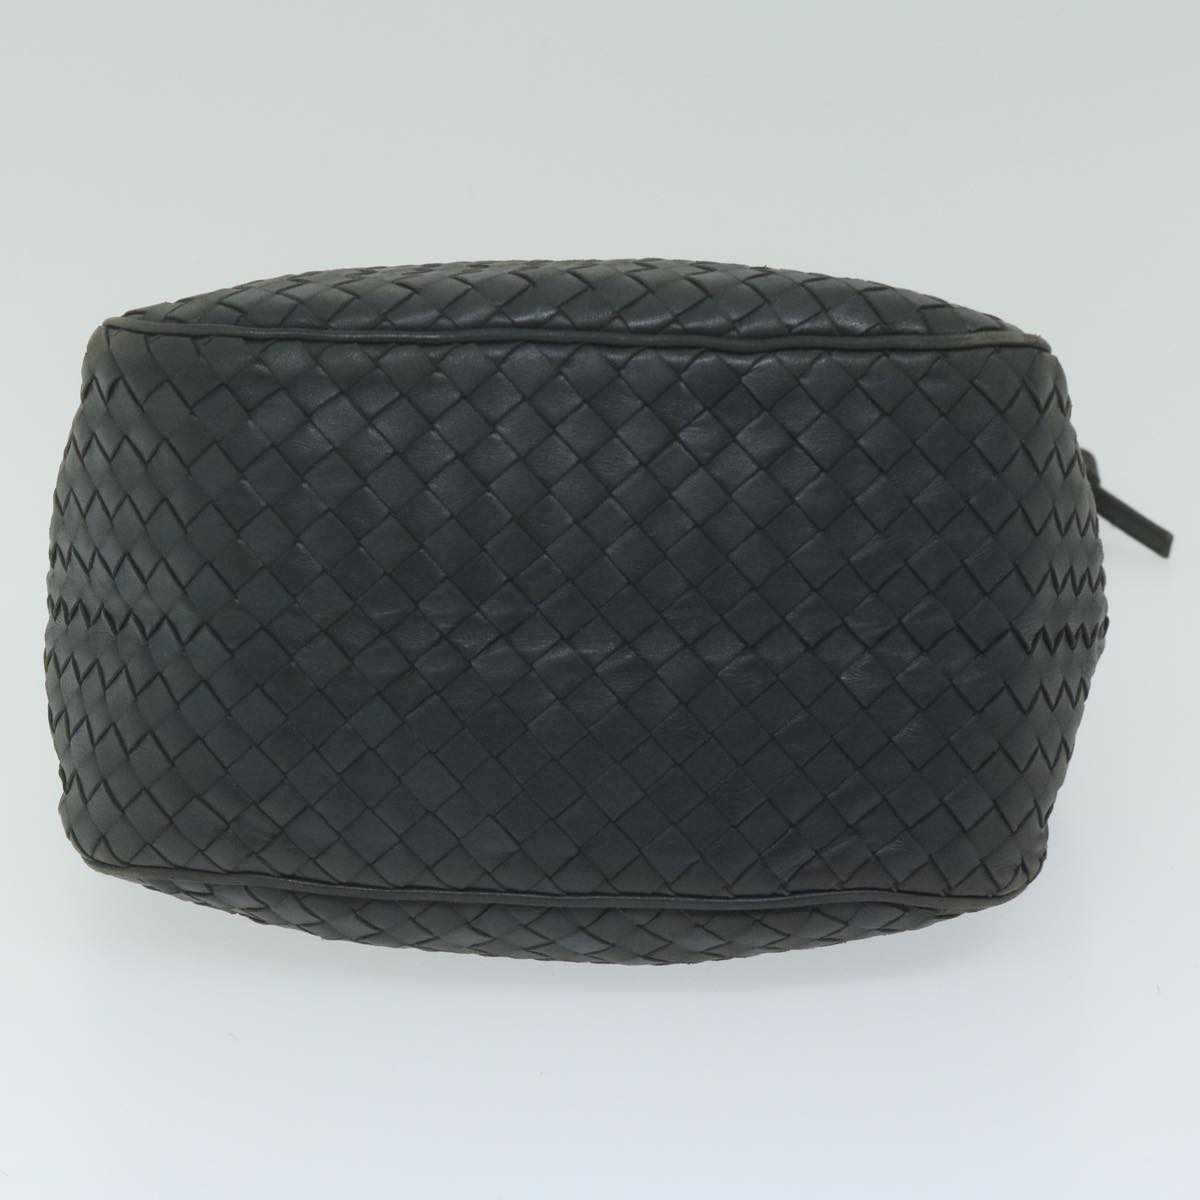 BOTTEGAVENETA INTRECCIATO Shoulder Bag Leather Black Auth 62130